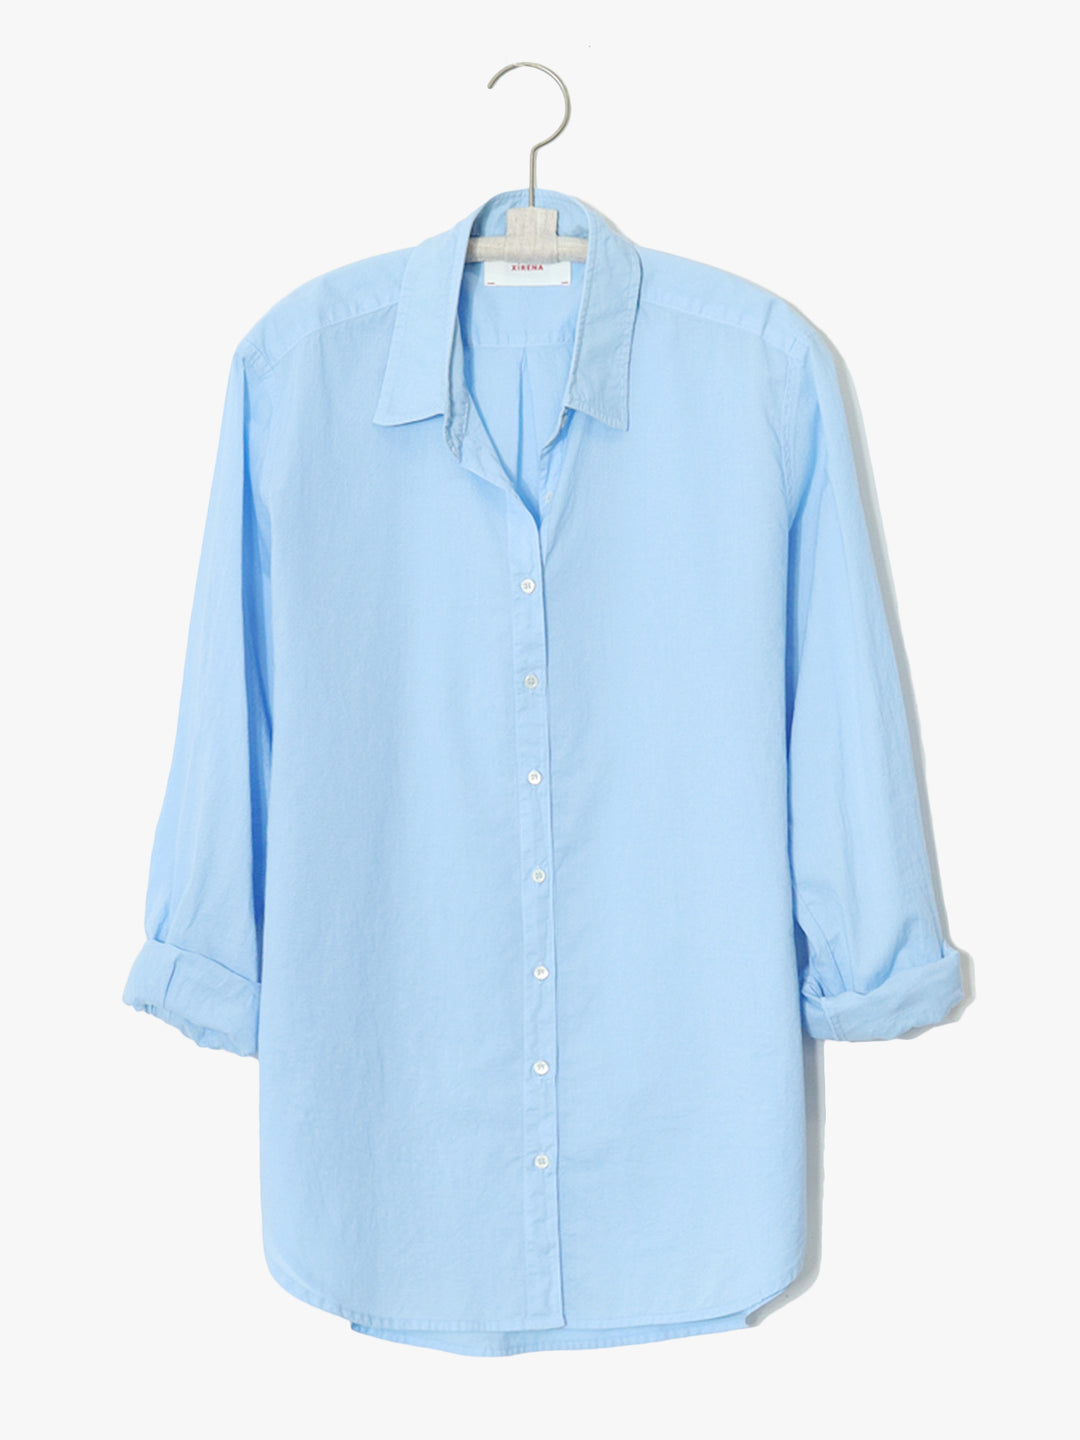 Xirena - Beau Shirt in Aviary Blue